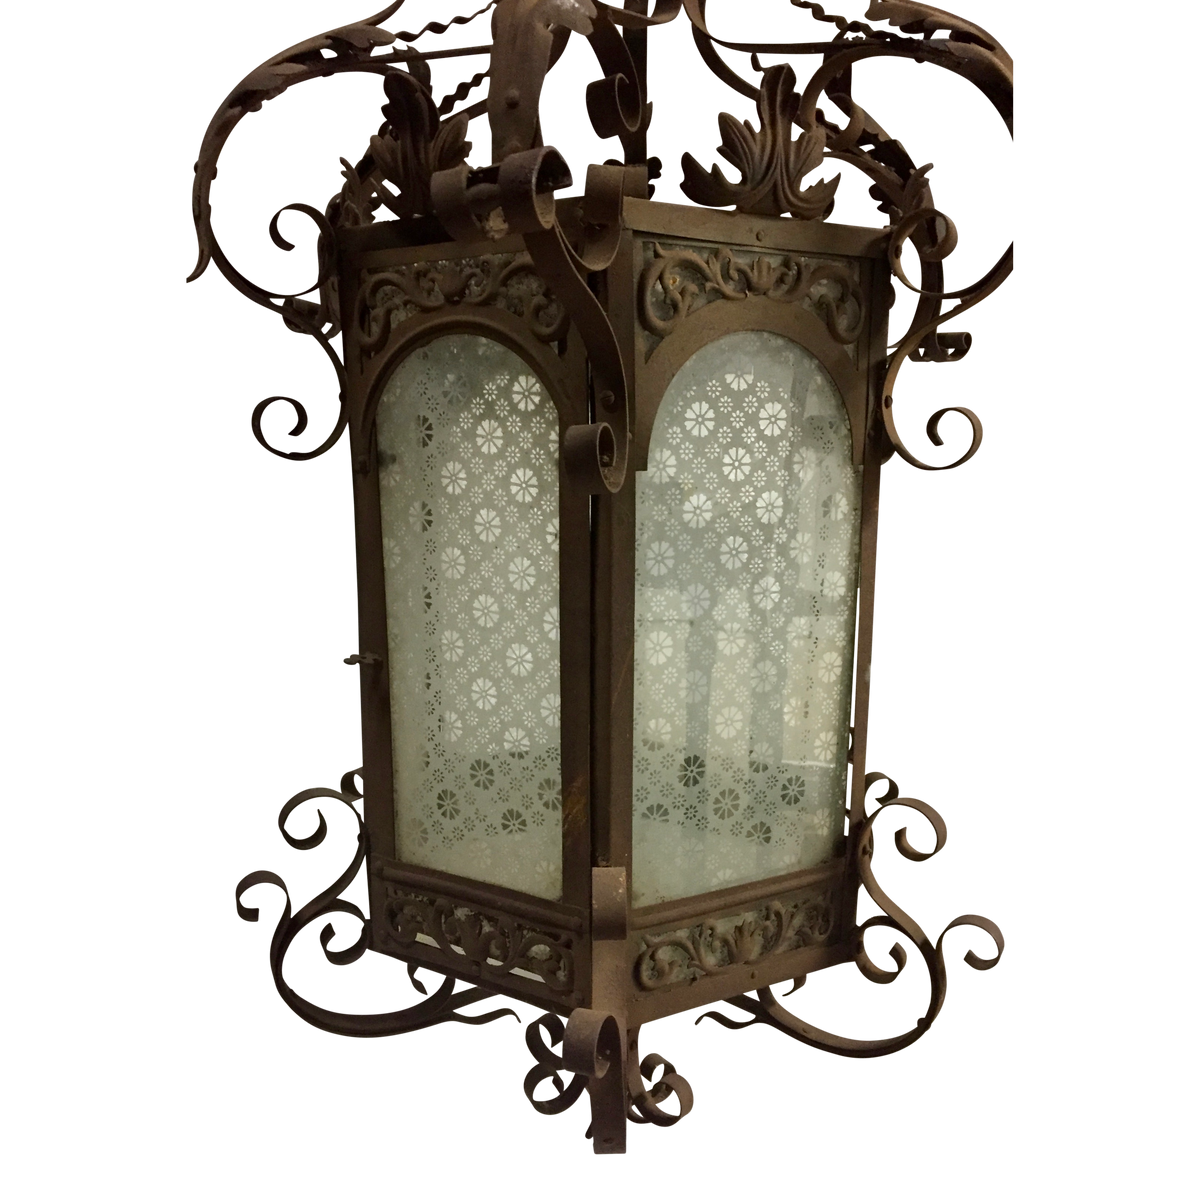 Neinkie Decorative Lantern Moroccan Lantern, Gothic Castle Hollow